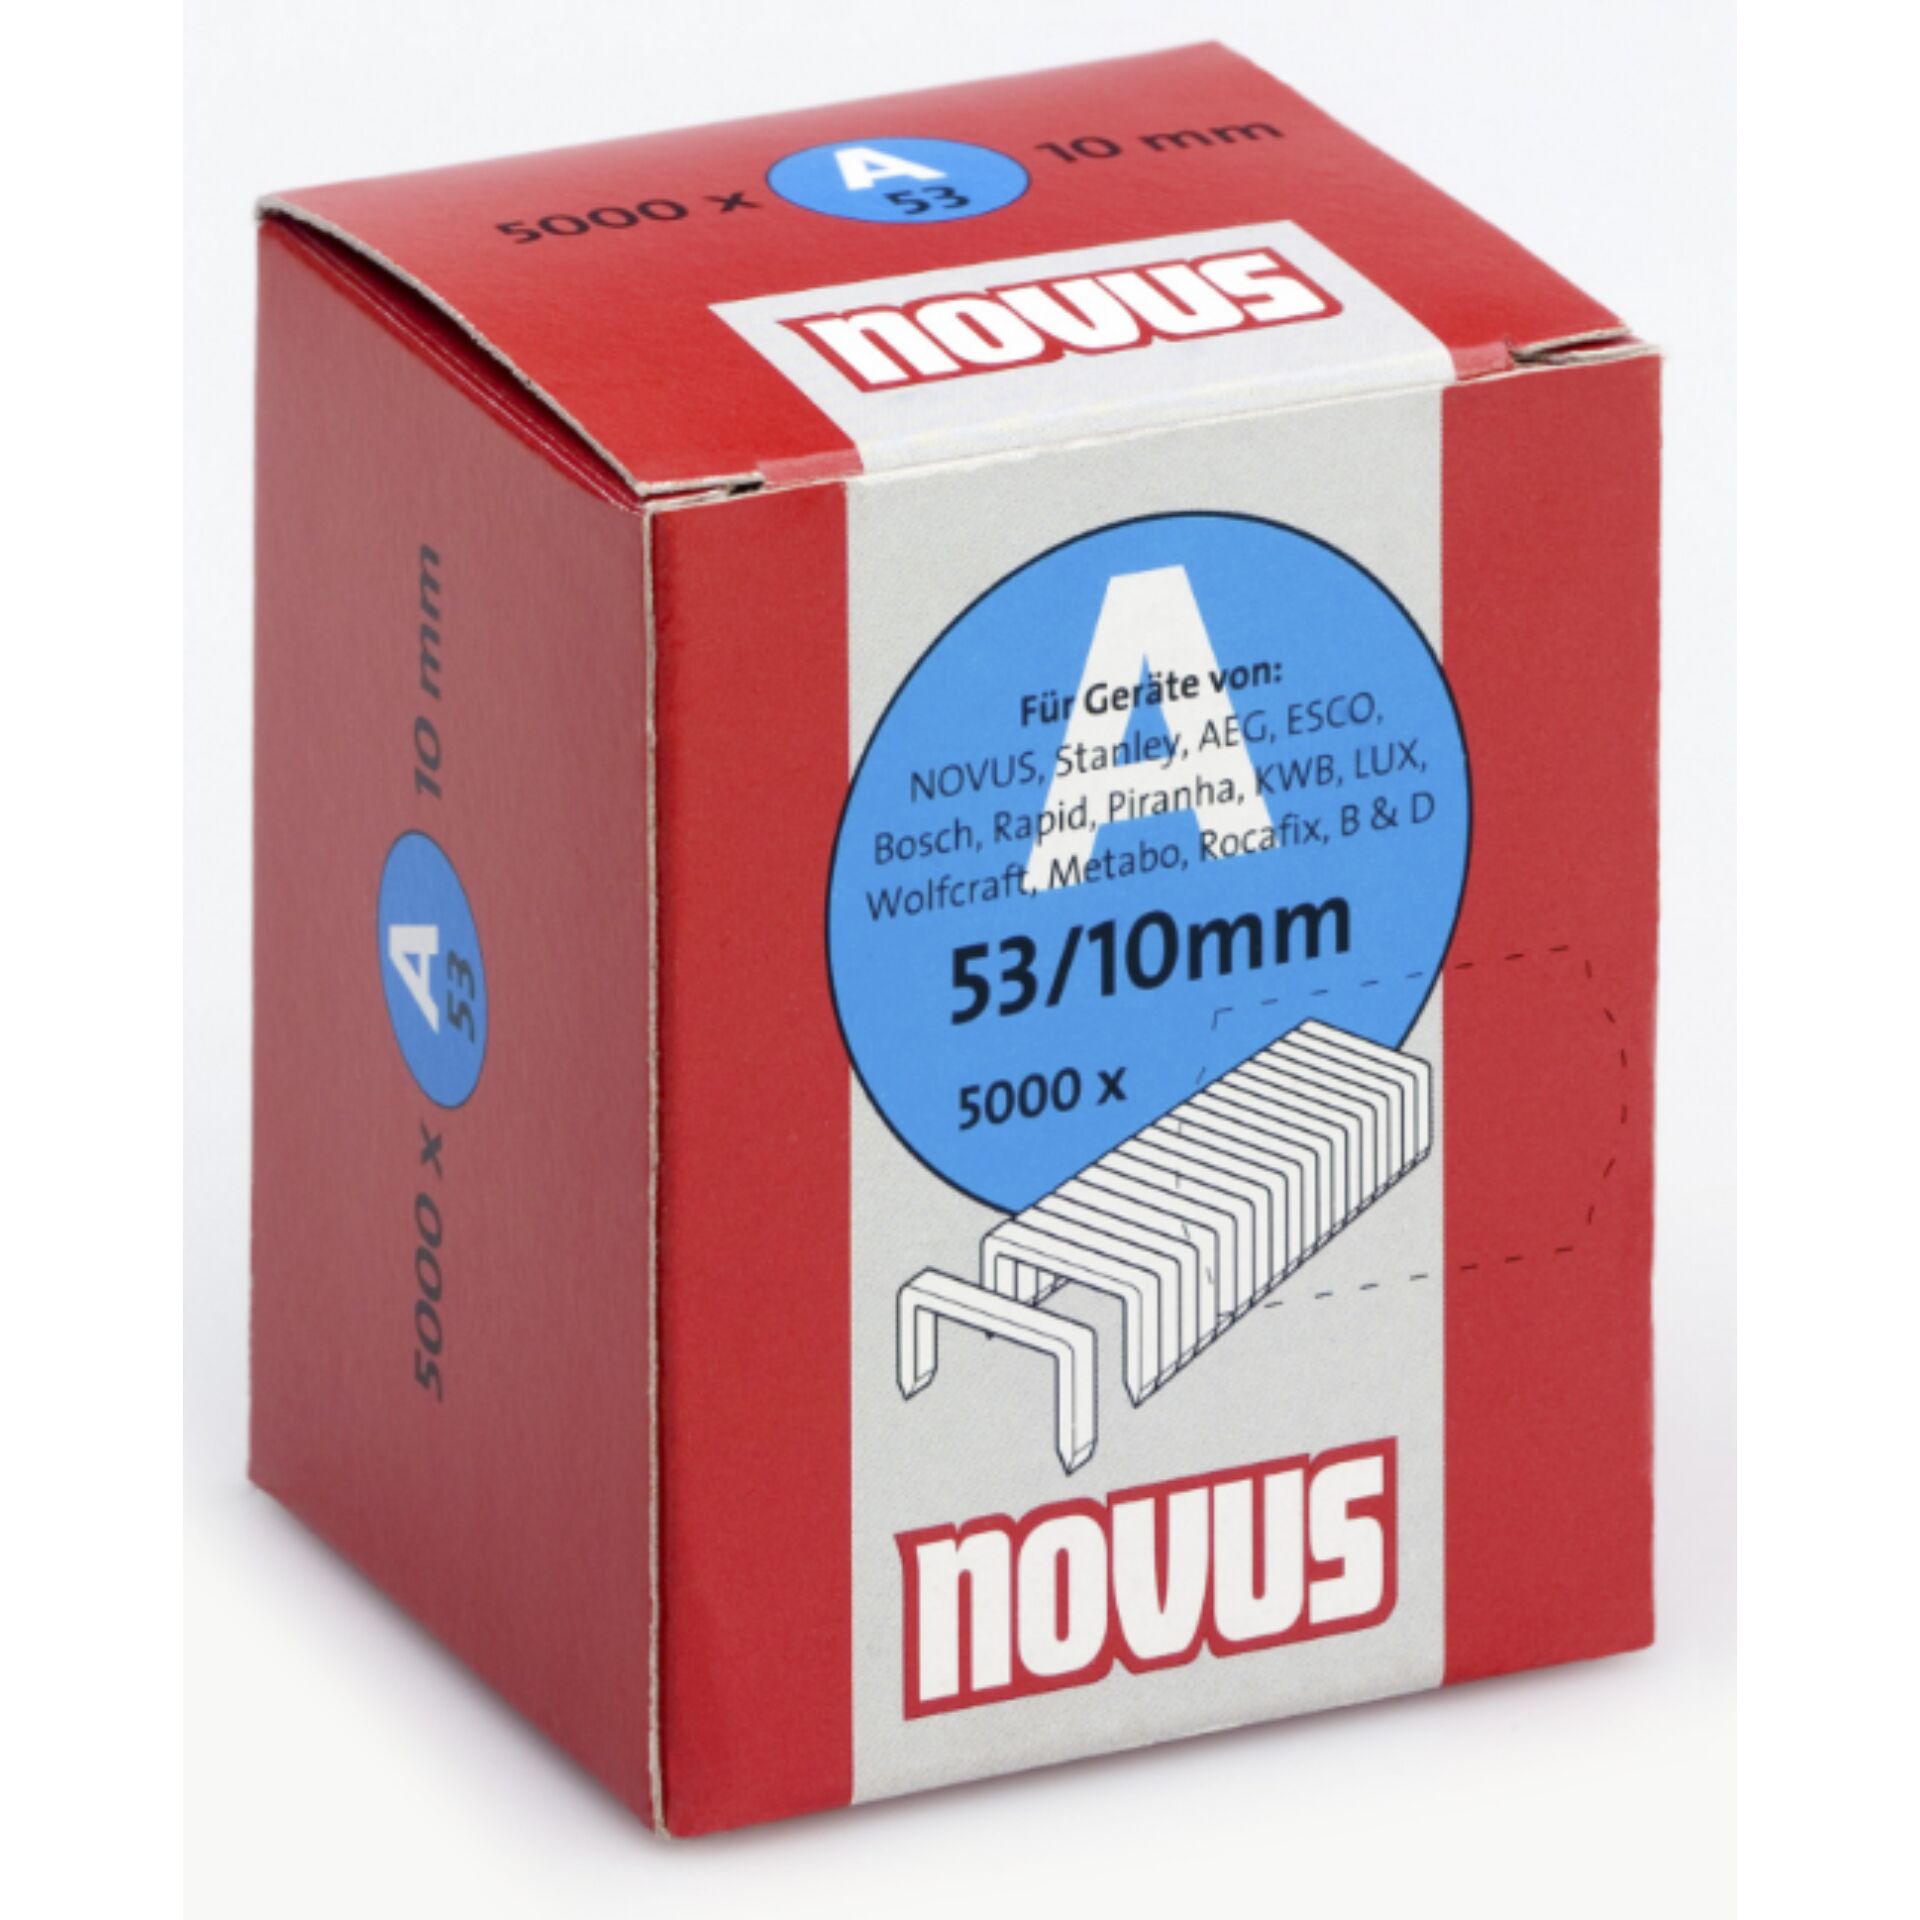 NOVUS Staples A 53 10MM 5000pc